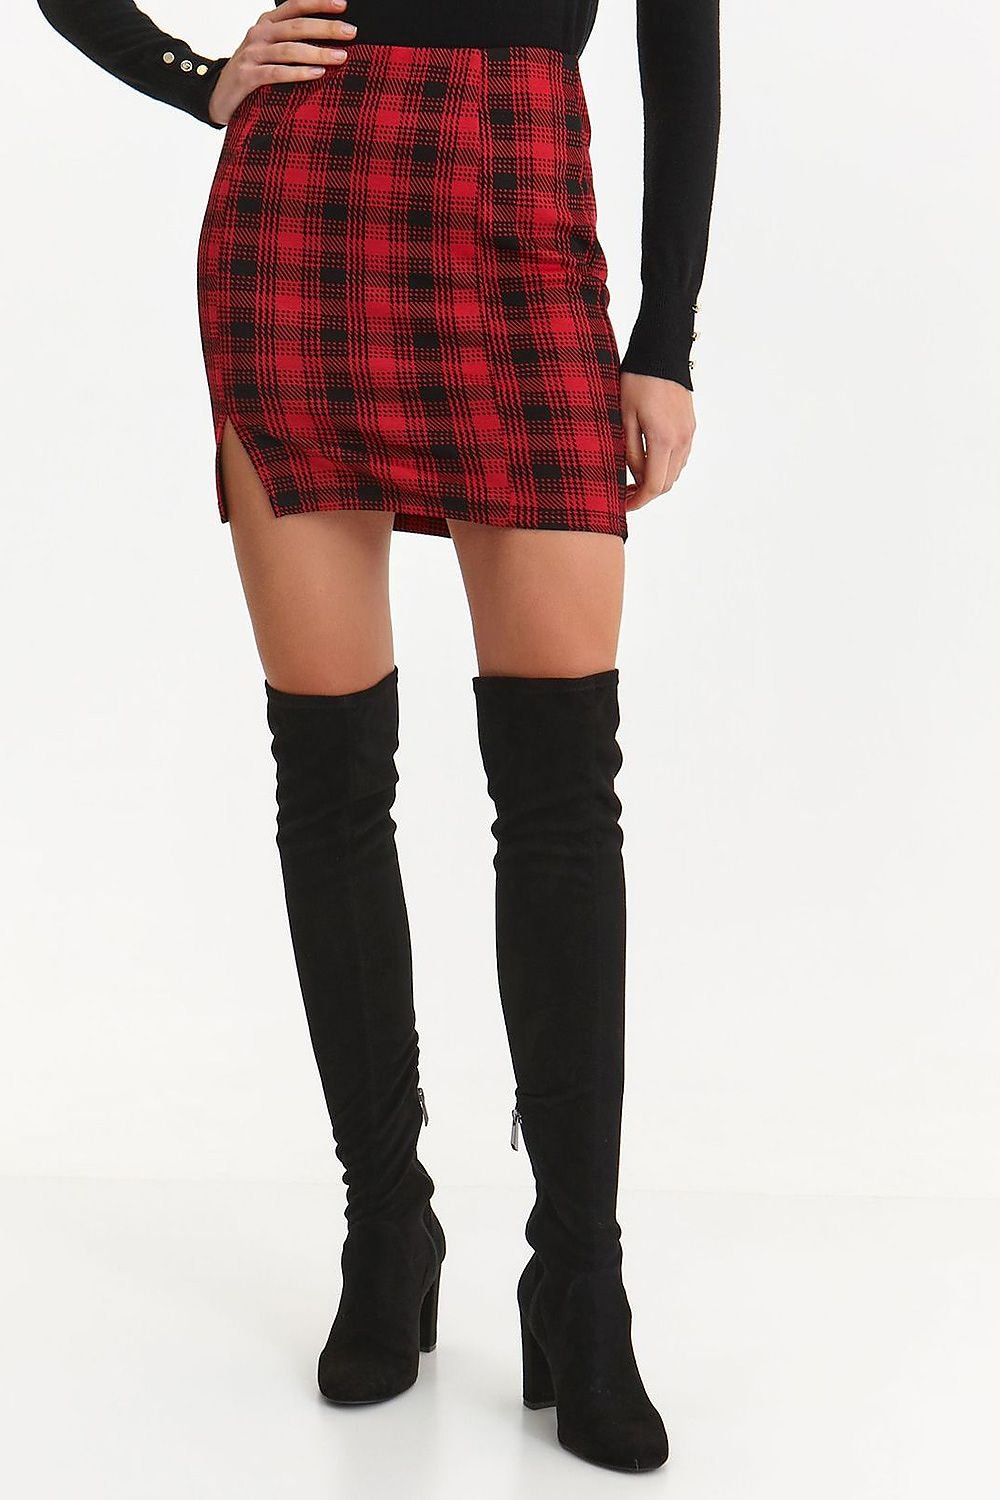 Jupe mini-jupe écossaise rouge et noire à carreaux avec coupe droite et style tendance, parfaite pour une tenue casual ou chic.